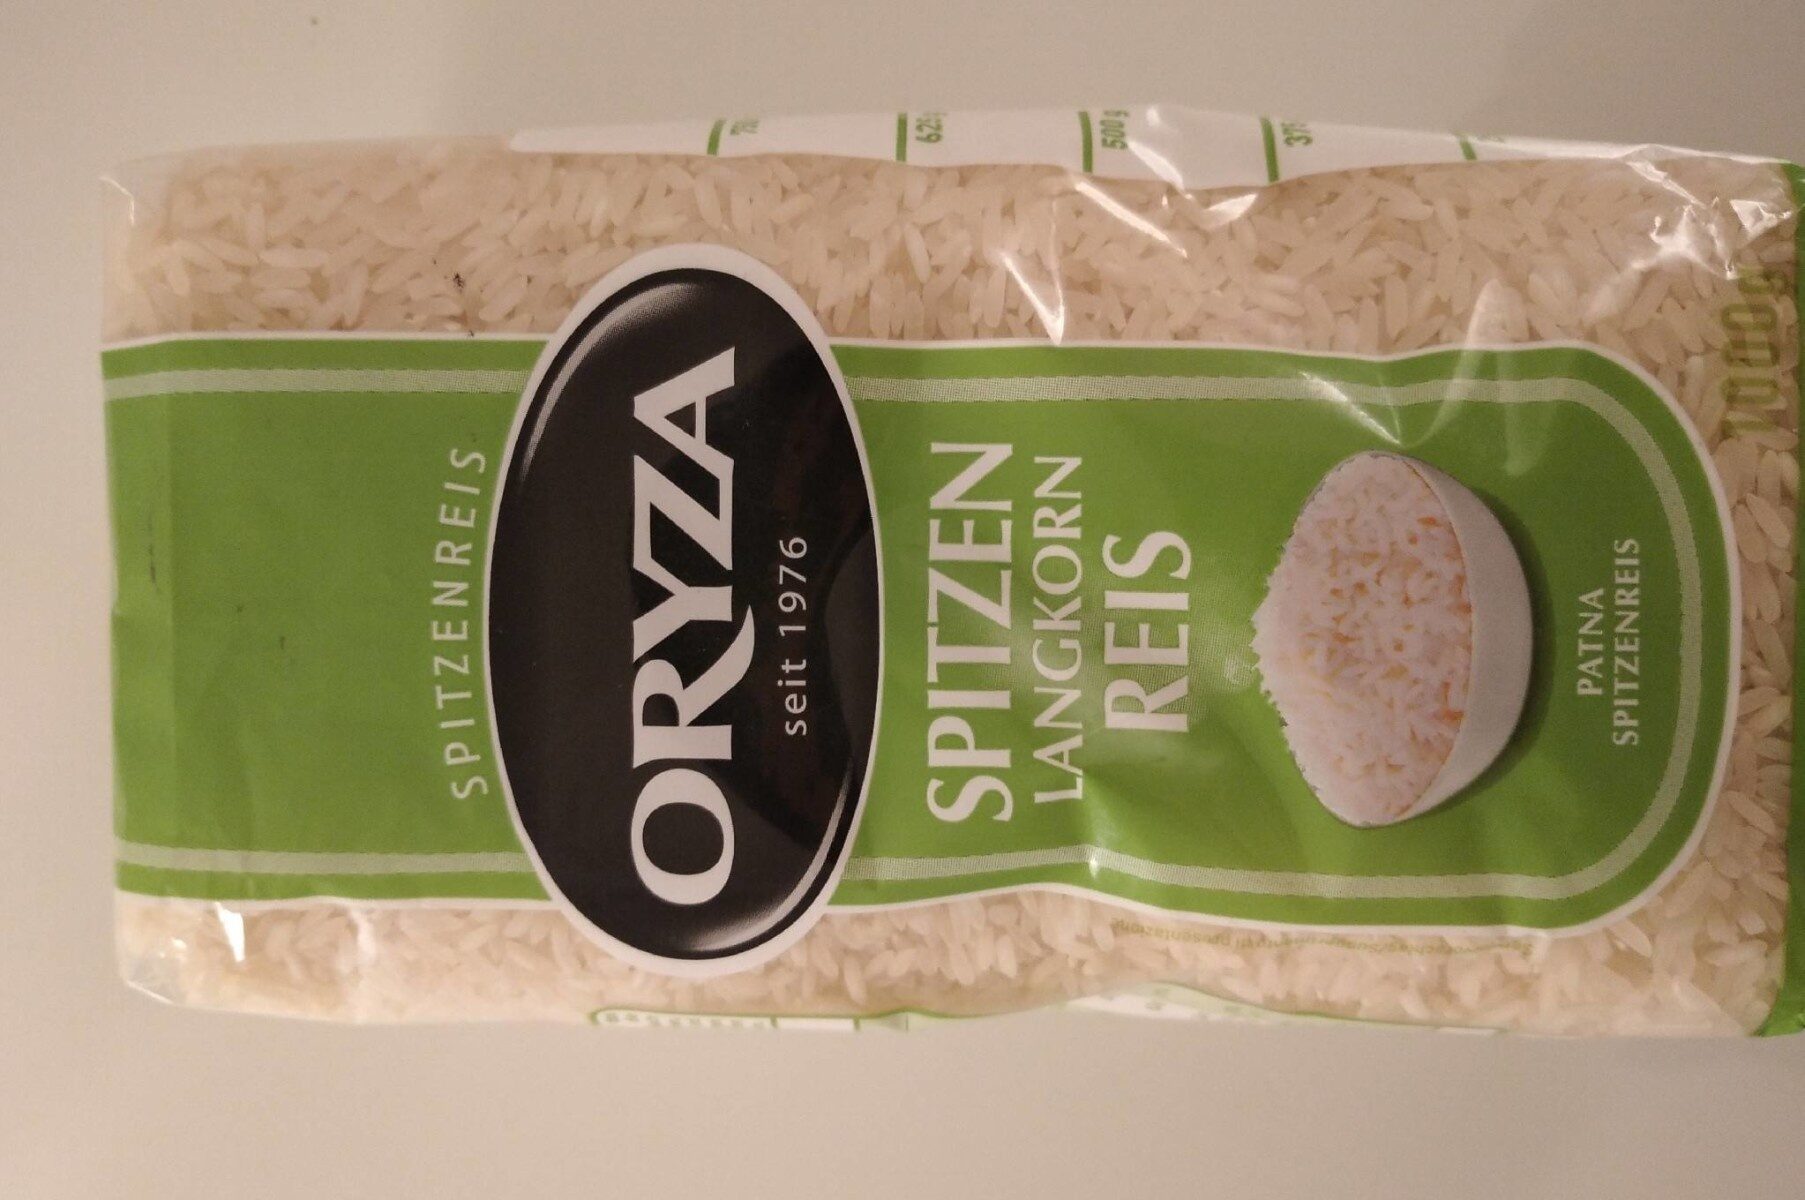 Spitzen Langkorn Reis - Produkt